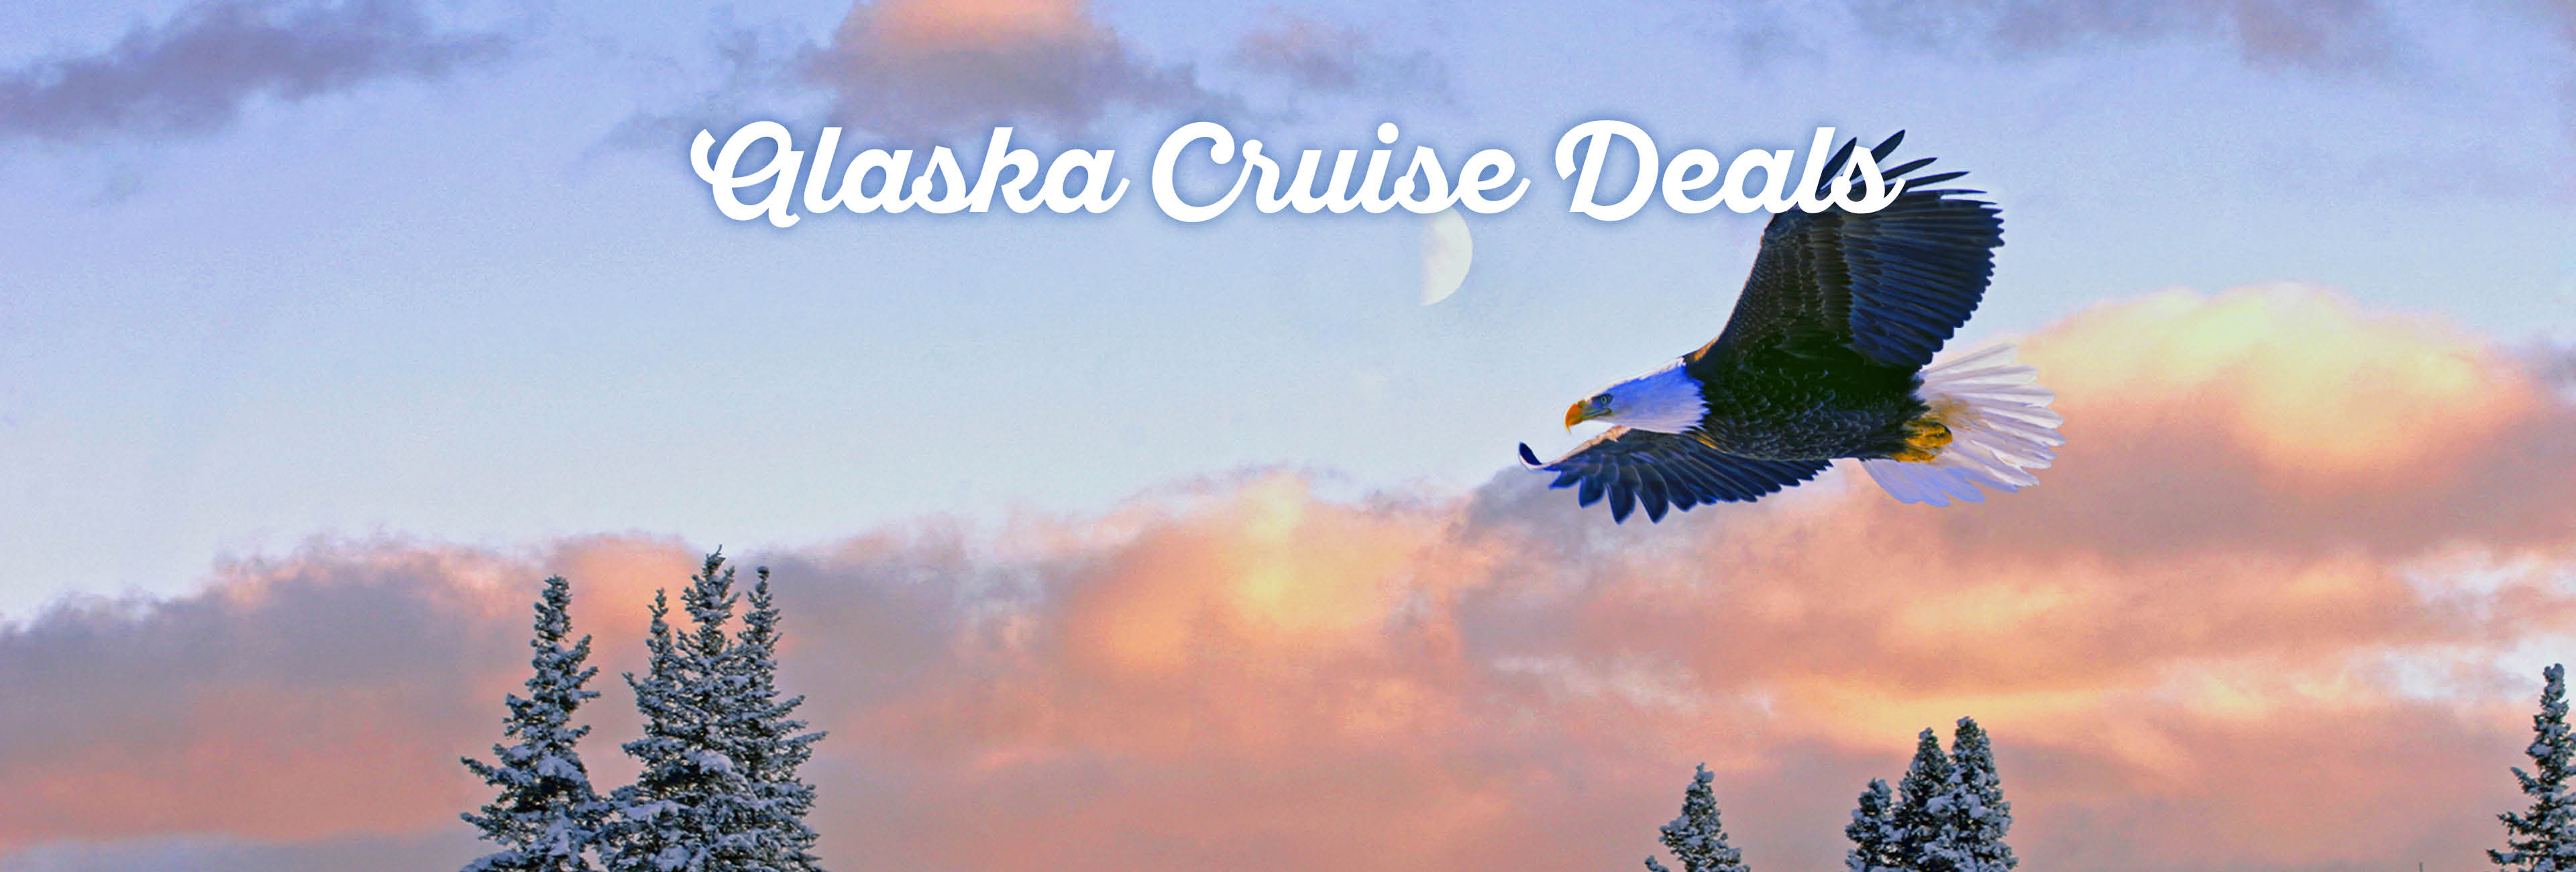 alaska-cruise-deals1.jpg